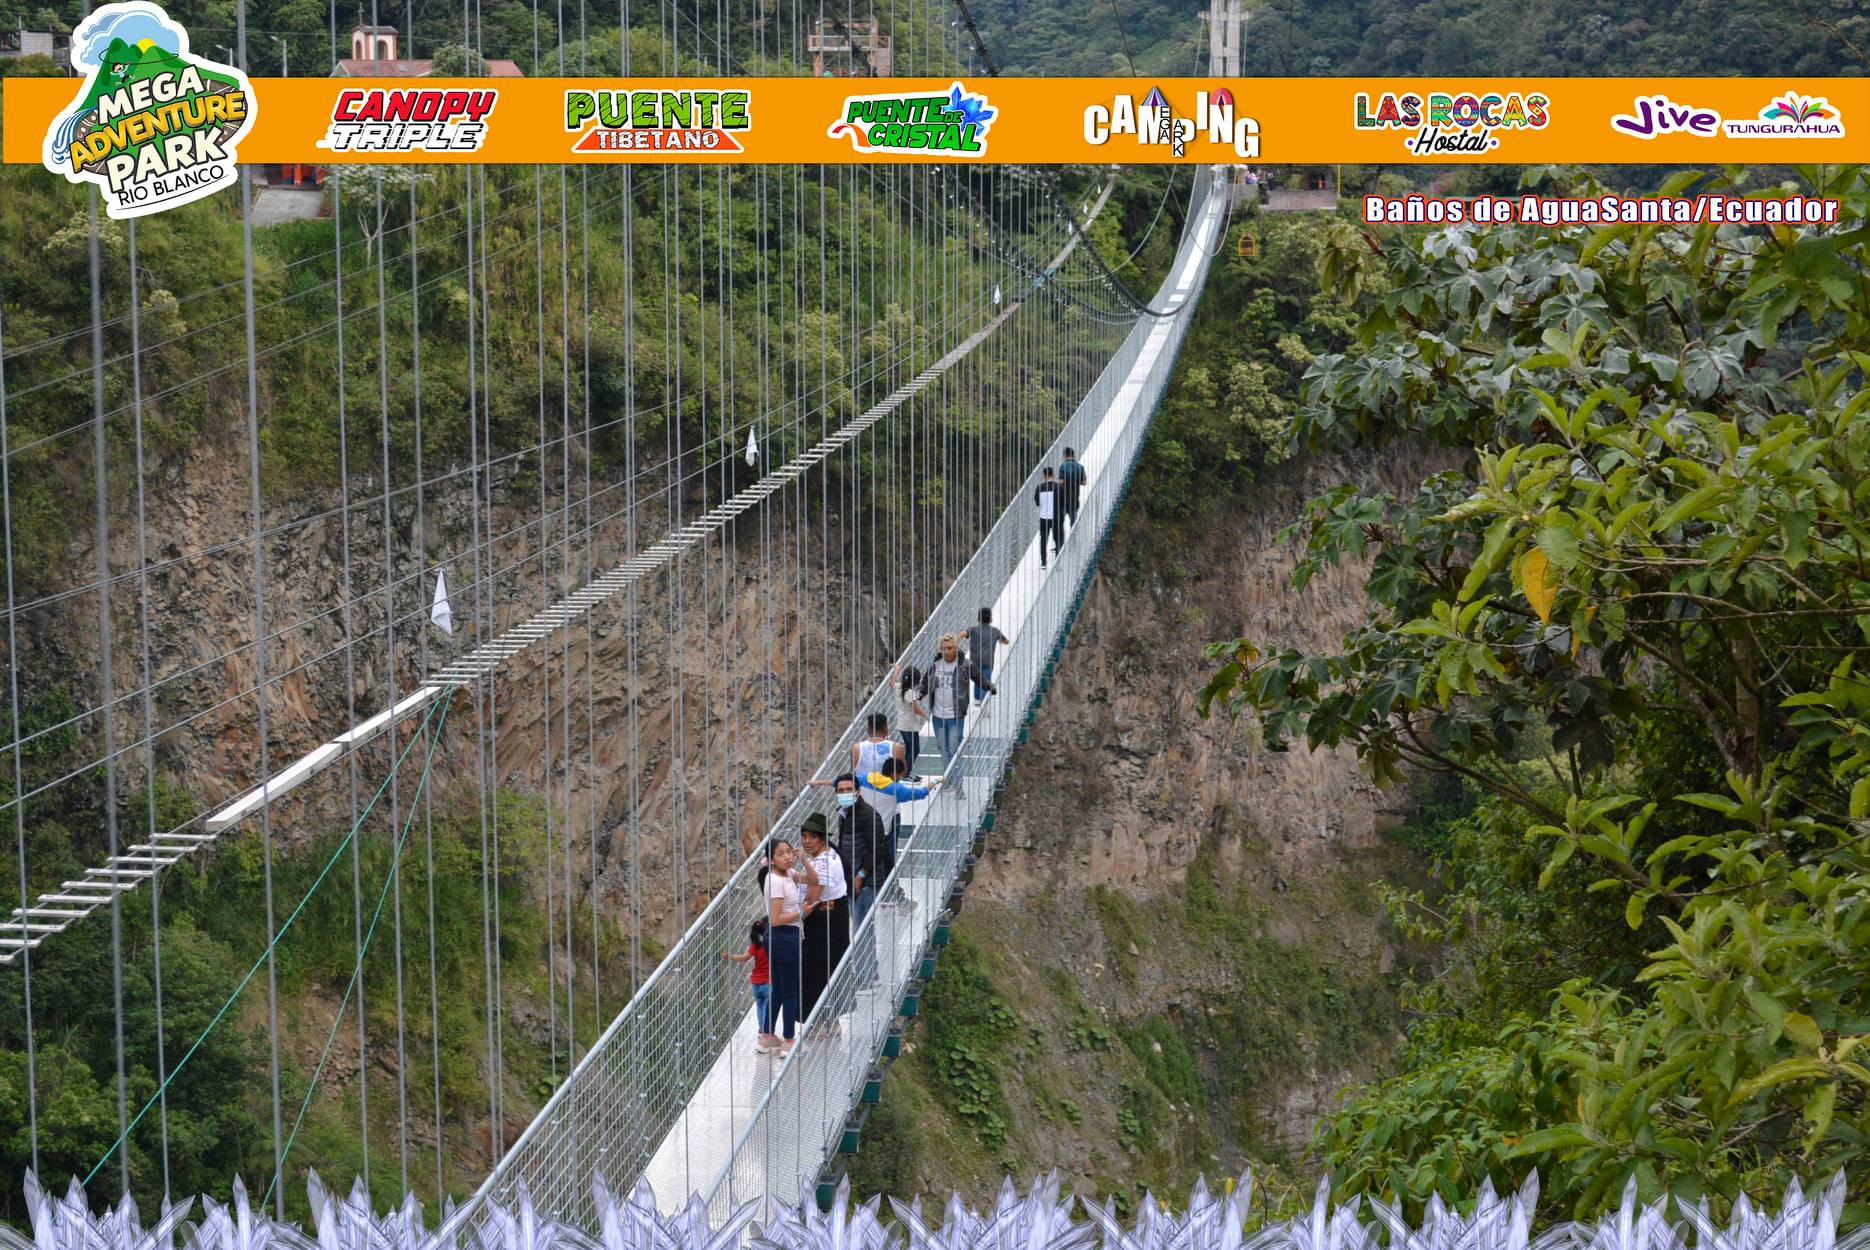 puente de cristal en ecuadors, puente de cristal con 300 metros, primer puente de latinoamerica de cristal, puente de cristal enrio blanco